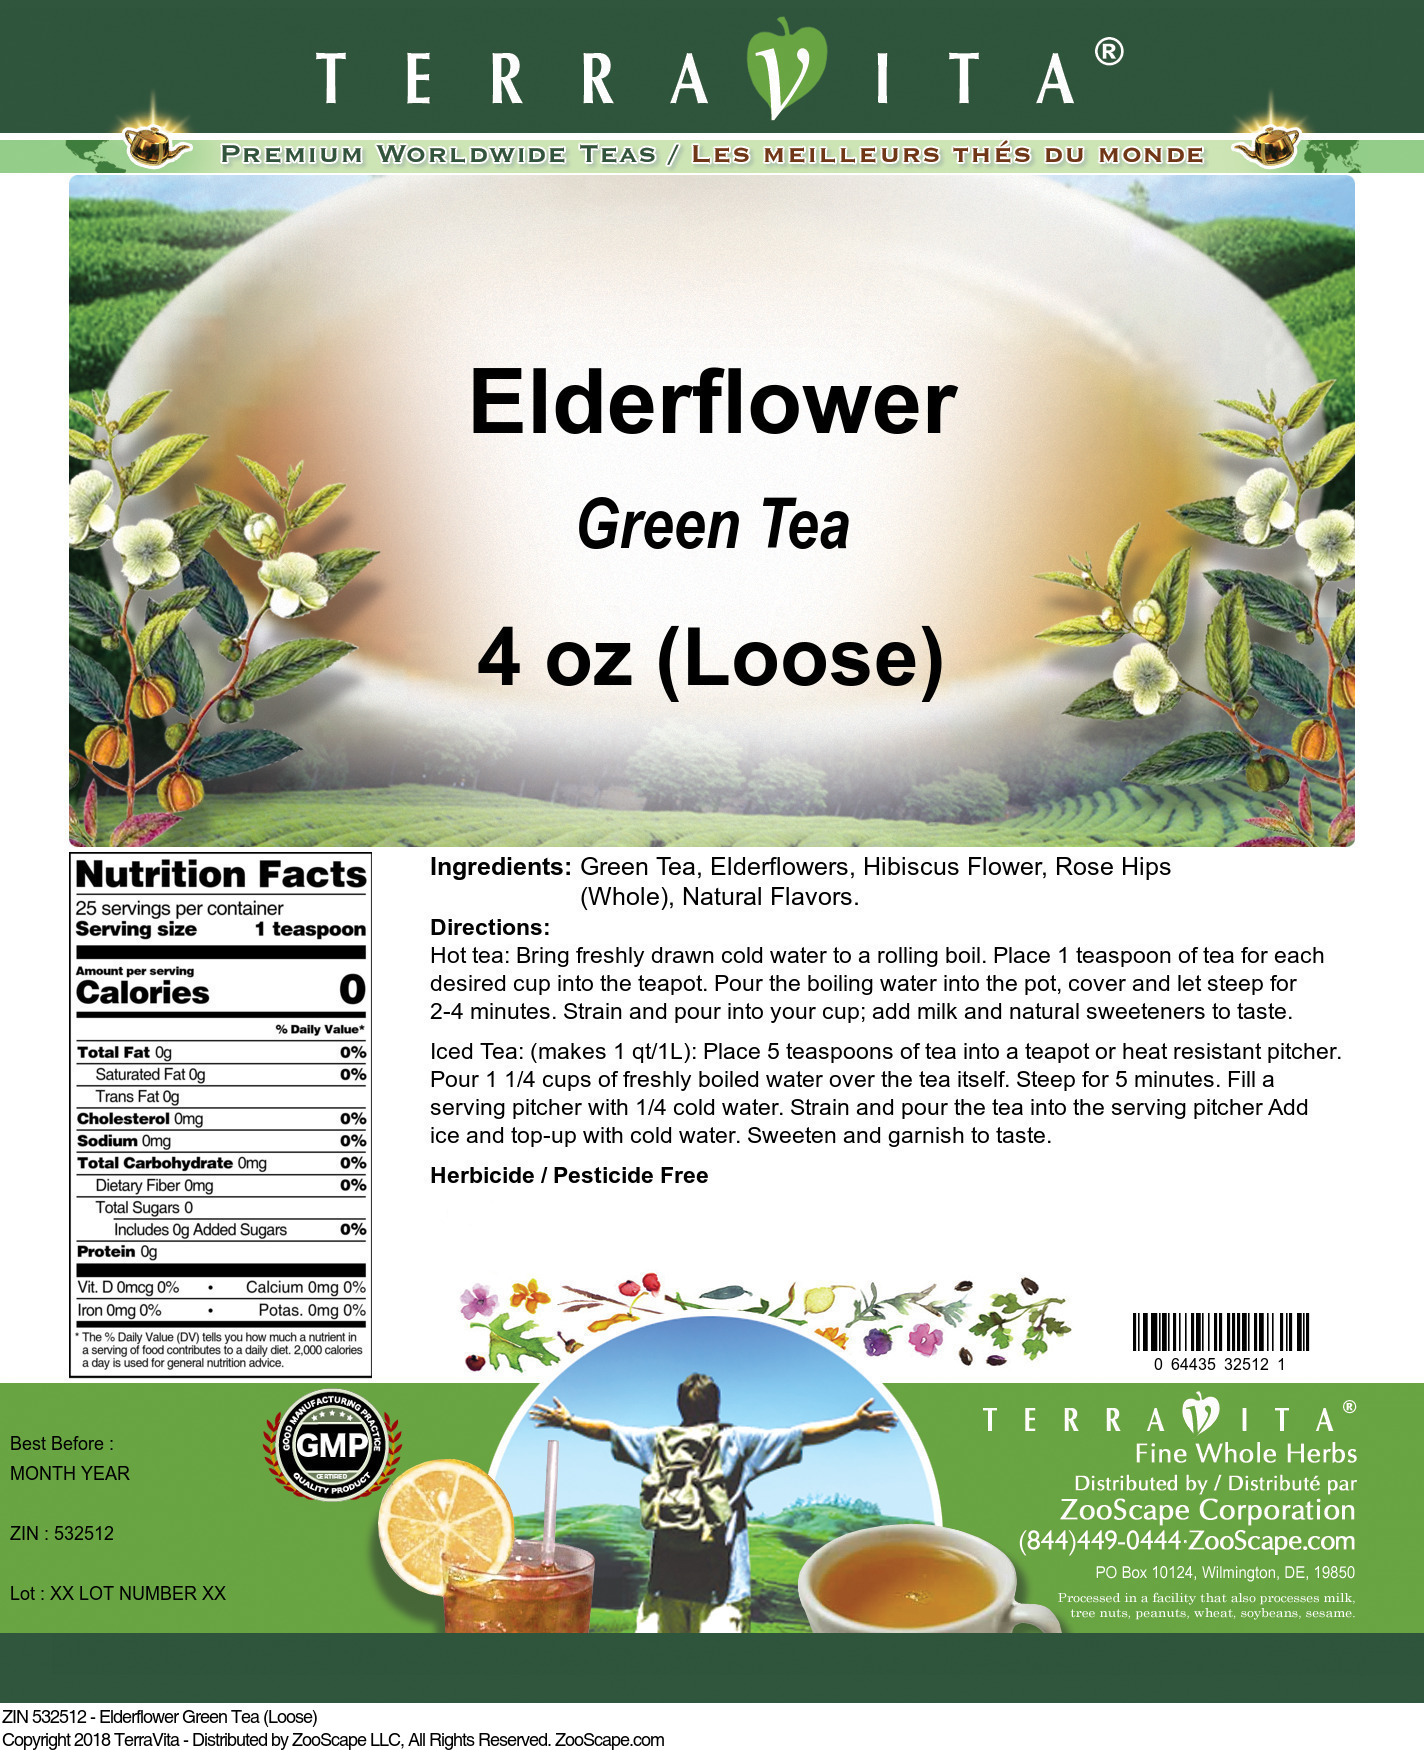 Elderflower Green Tea (Loose) - Label